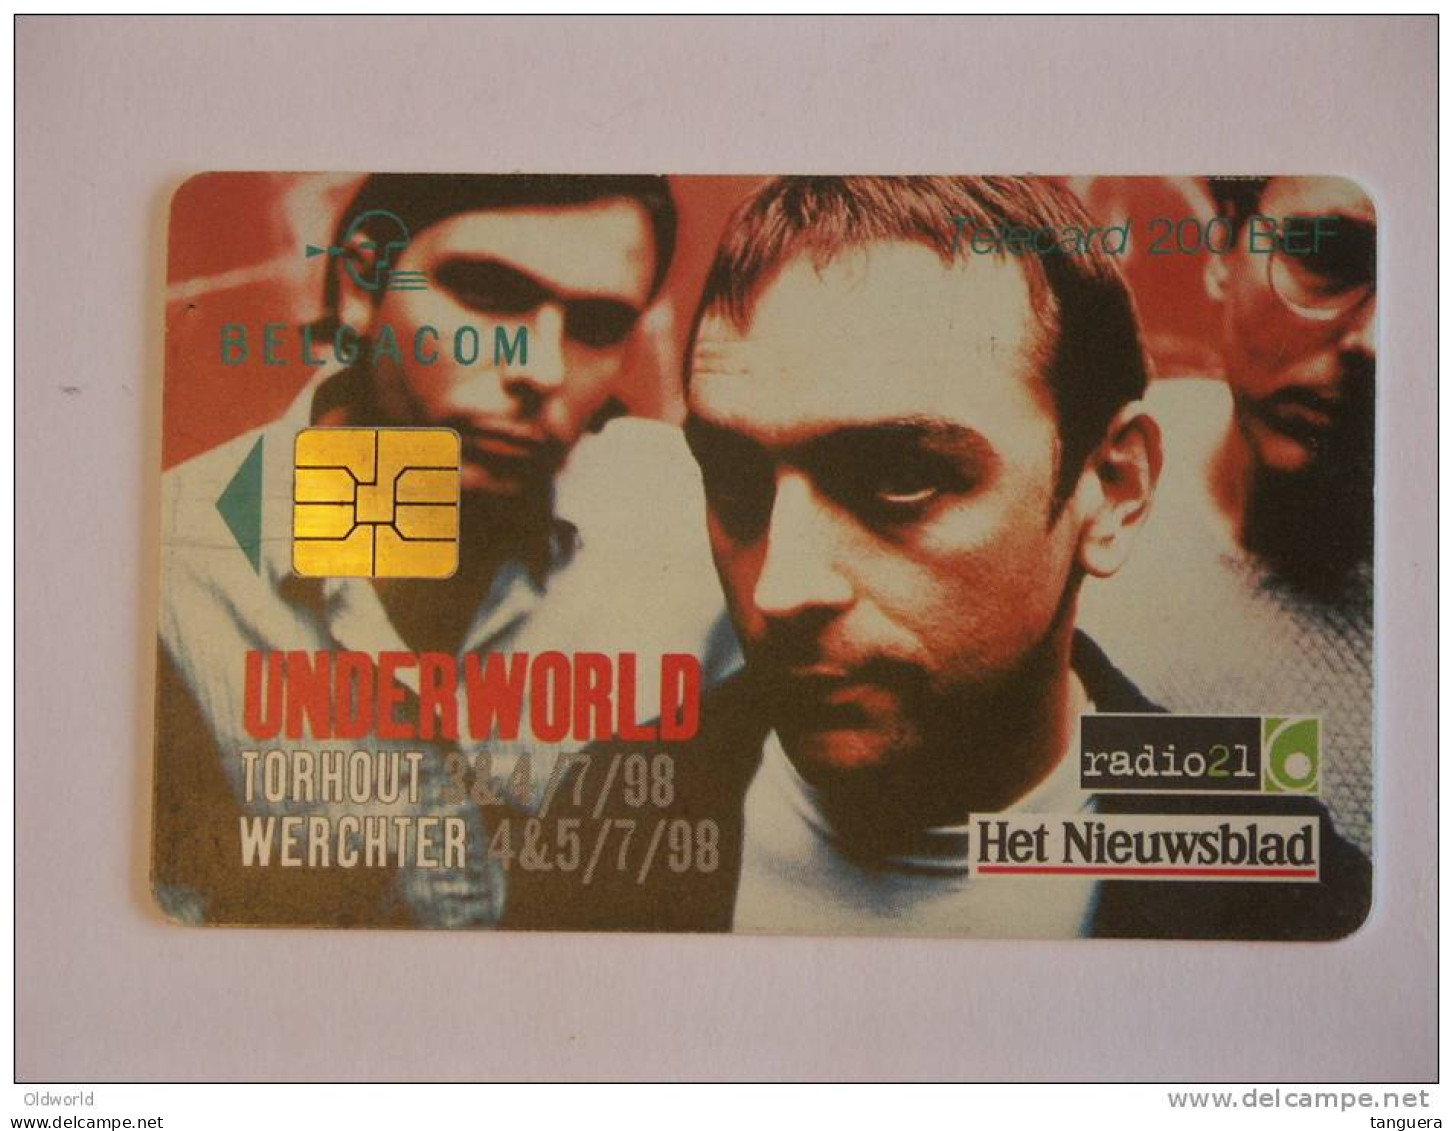 Telefoonkaart Telecard Belgacom Belgique België TW Underworld 1998 - Met Chip